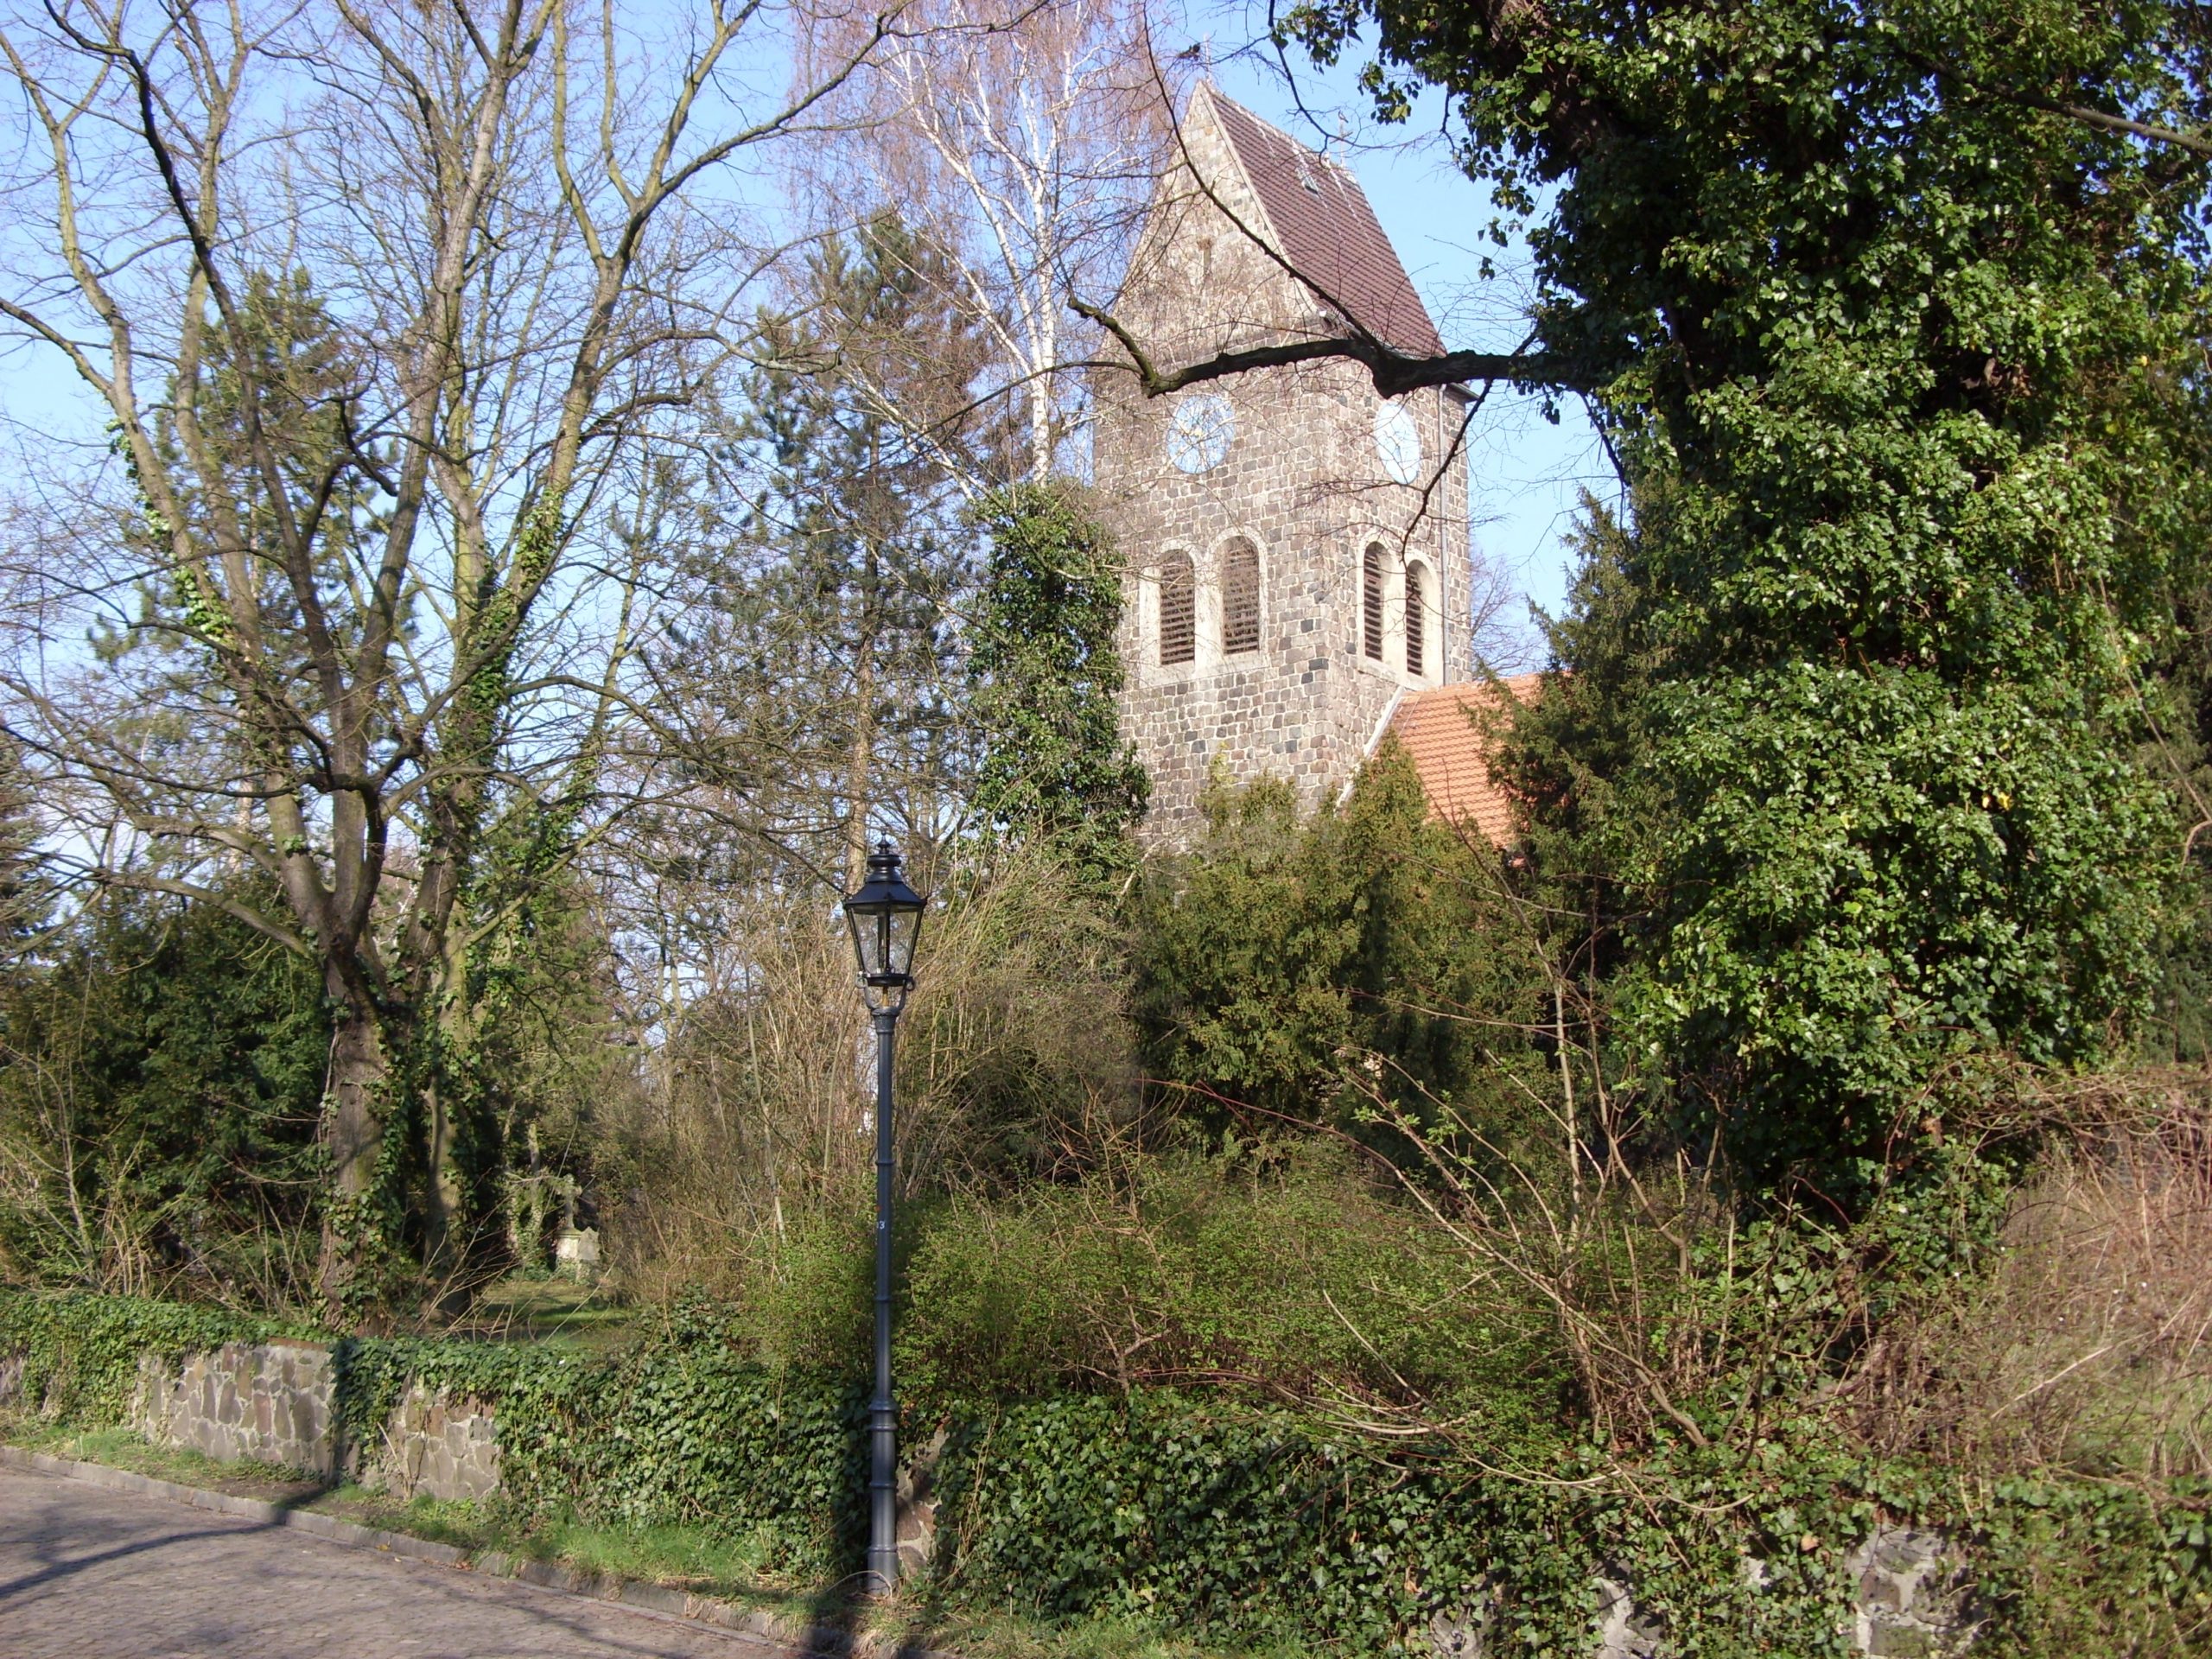 Dorfkirche Lichtenrade. Foto: Migra/Wikimedia Commons/ CC BY SA 2.0